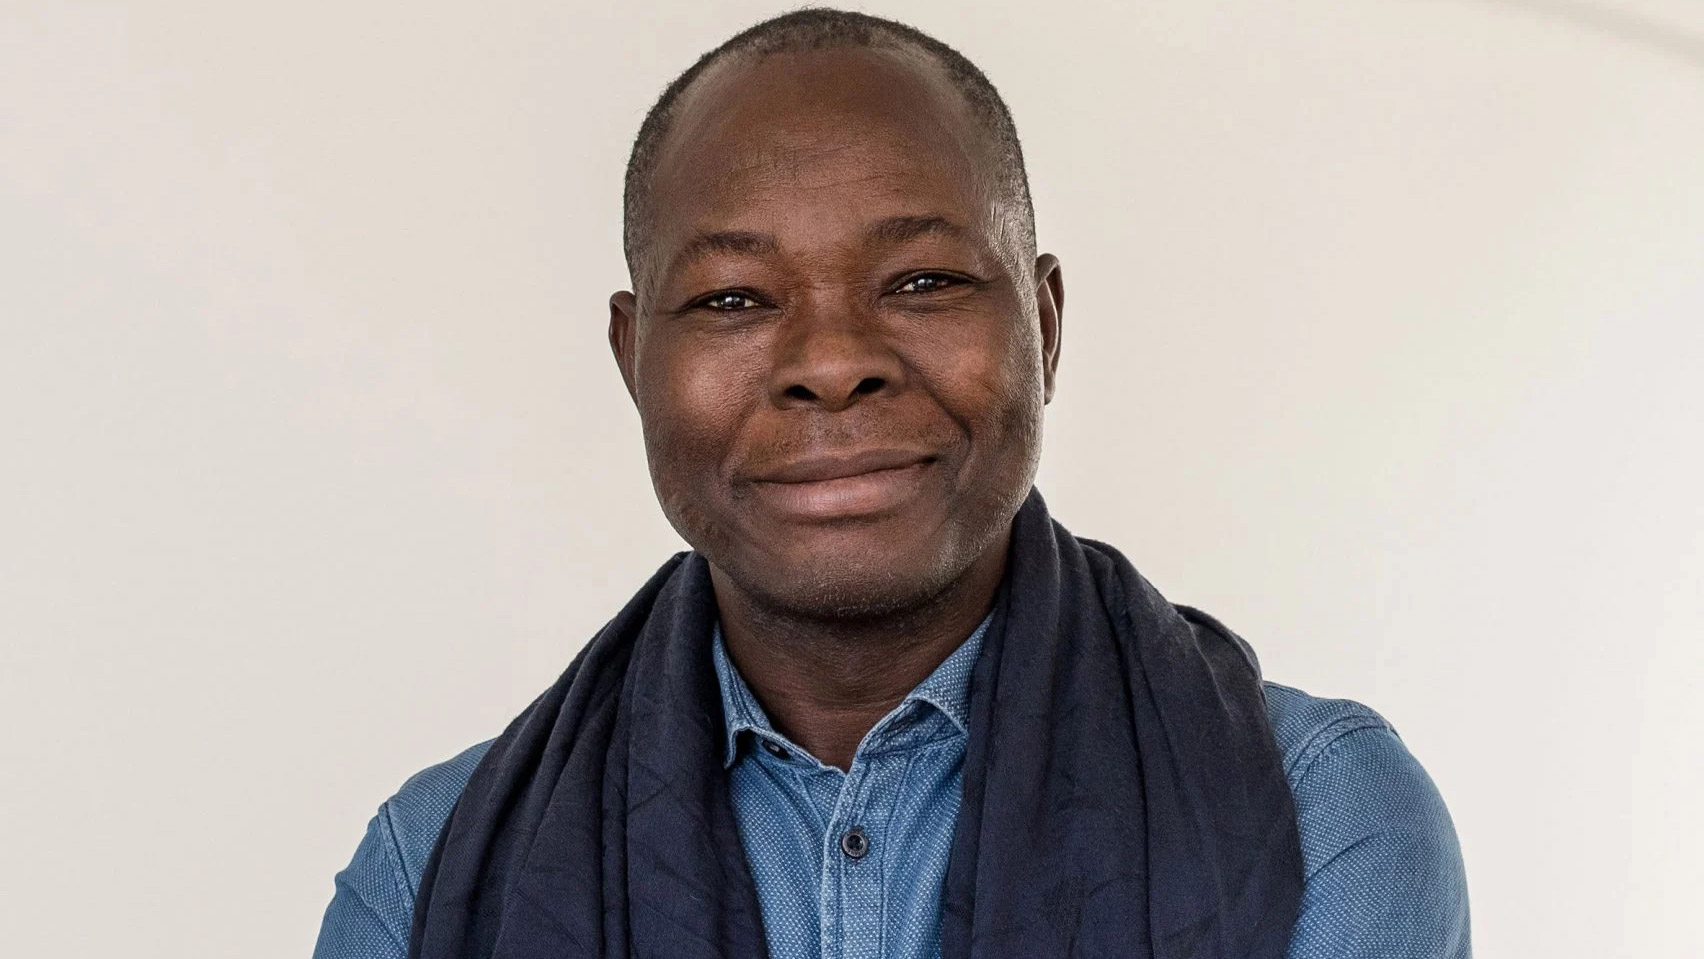 Diébédo Francis Kéré named among Time's 100 most influential climate leaders